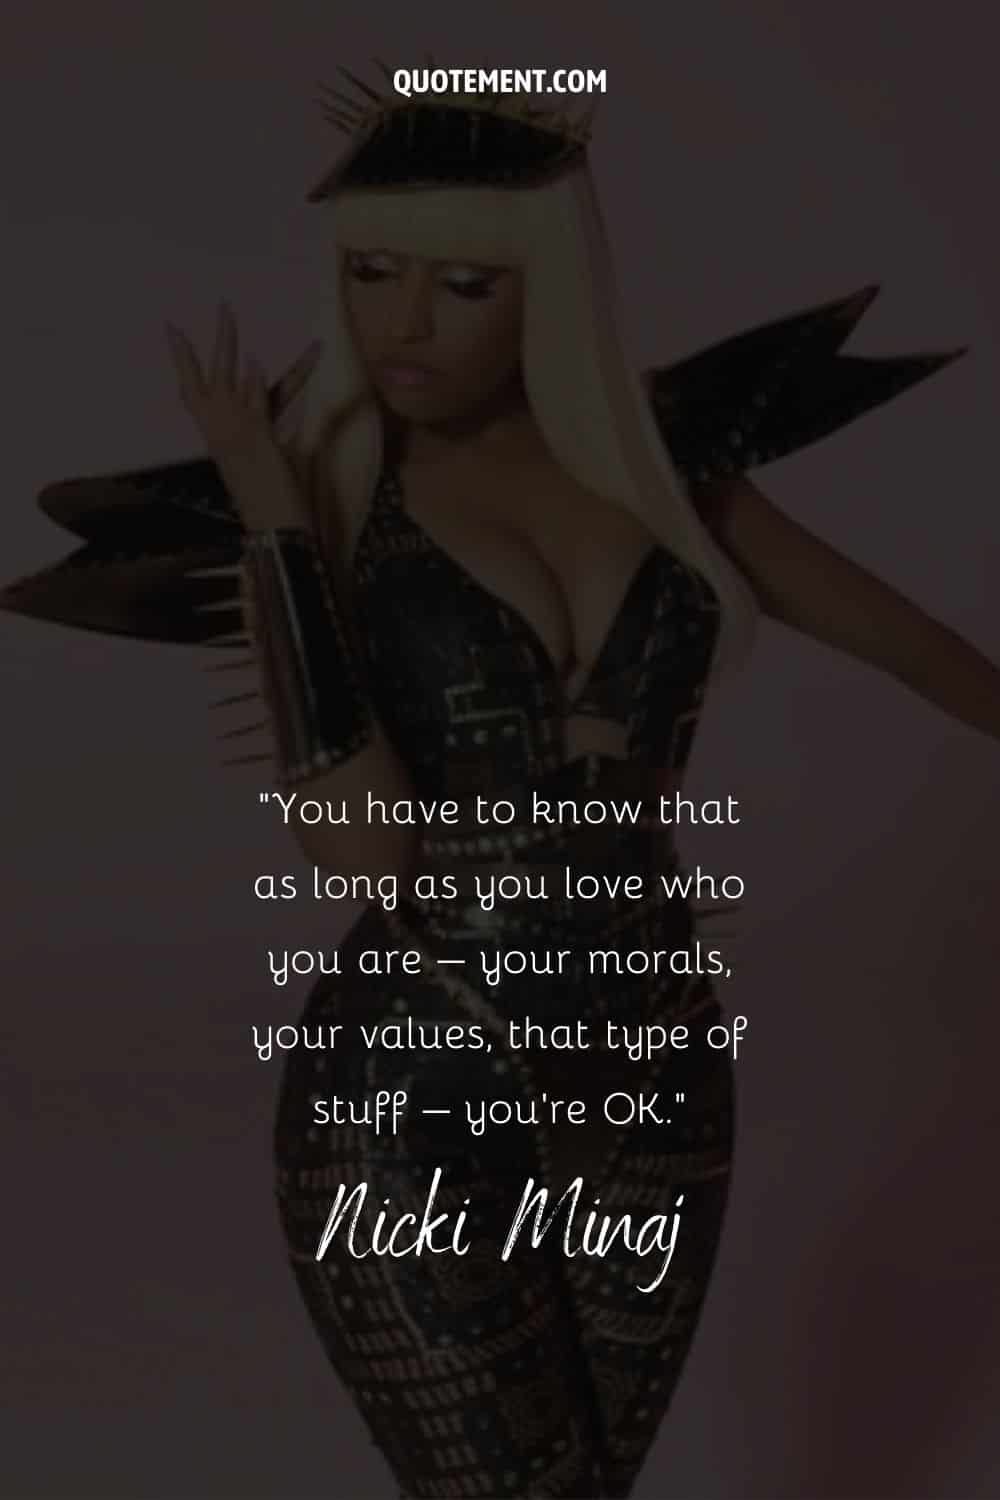 Cita inspiradora y motivadora de Nicki Minaj y su foto también de fondo